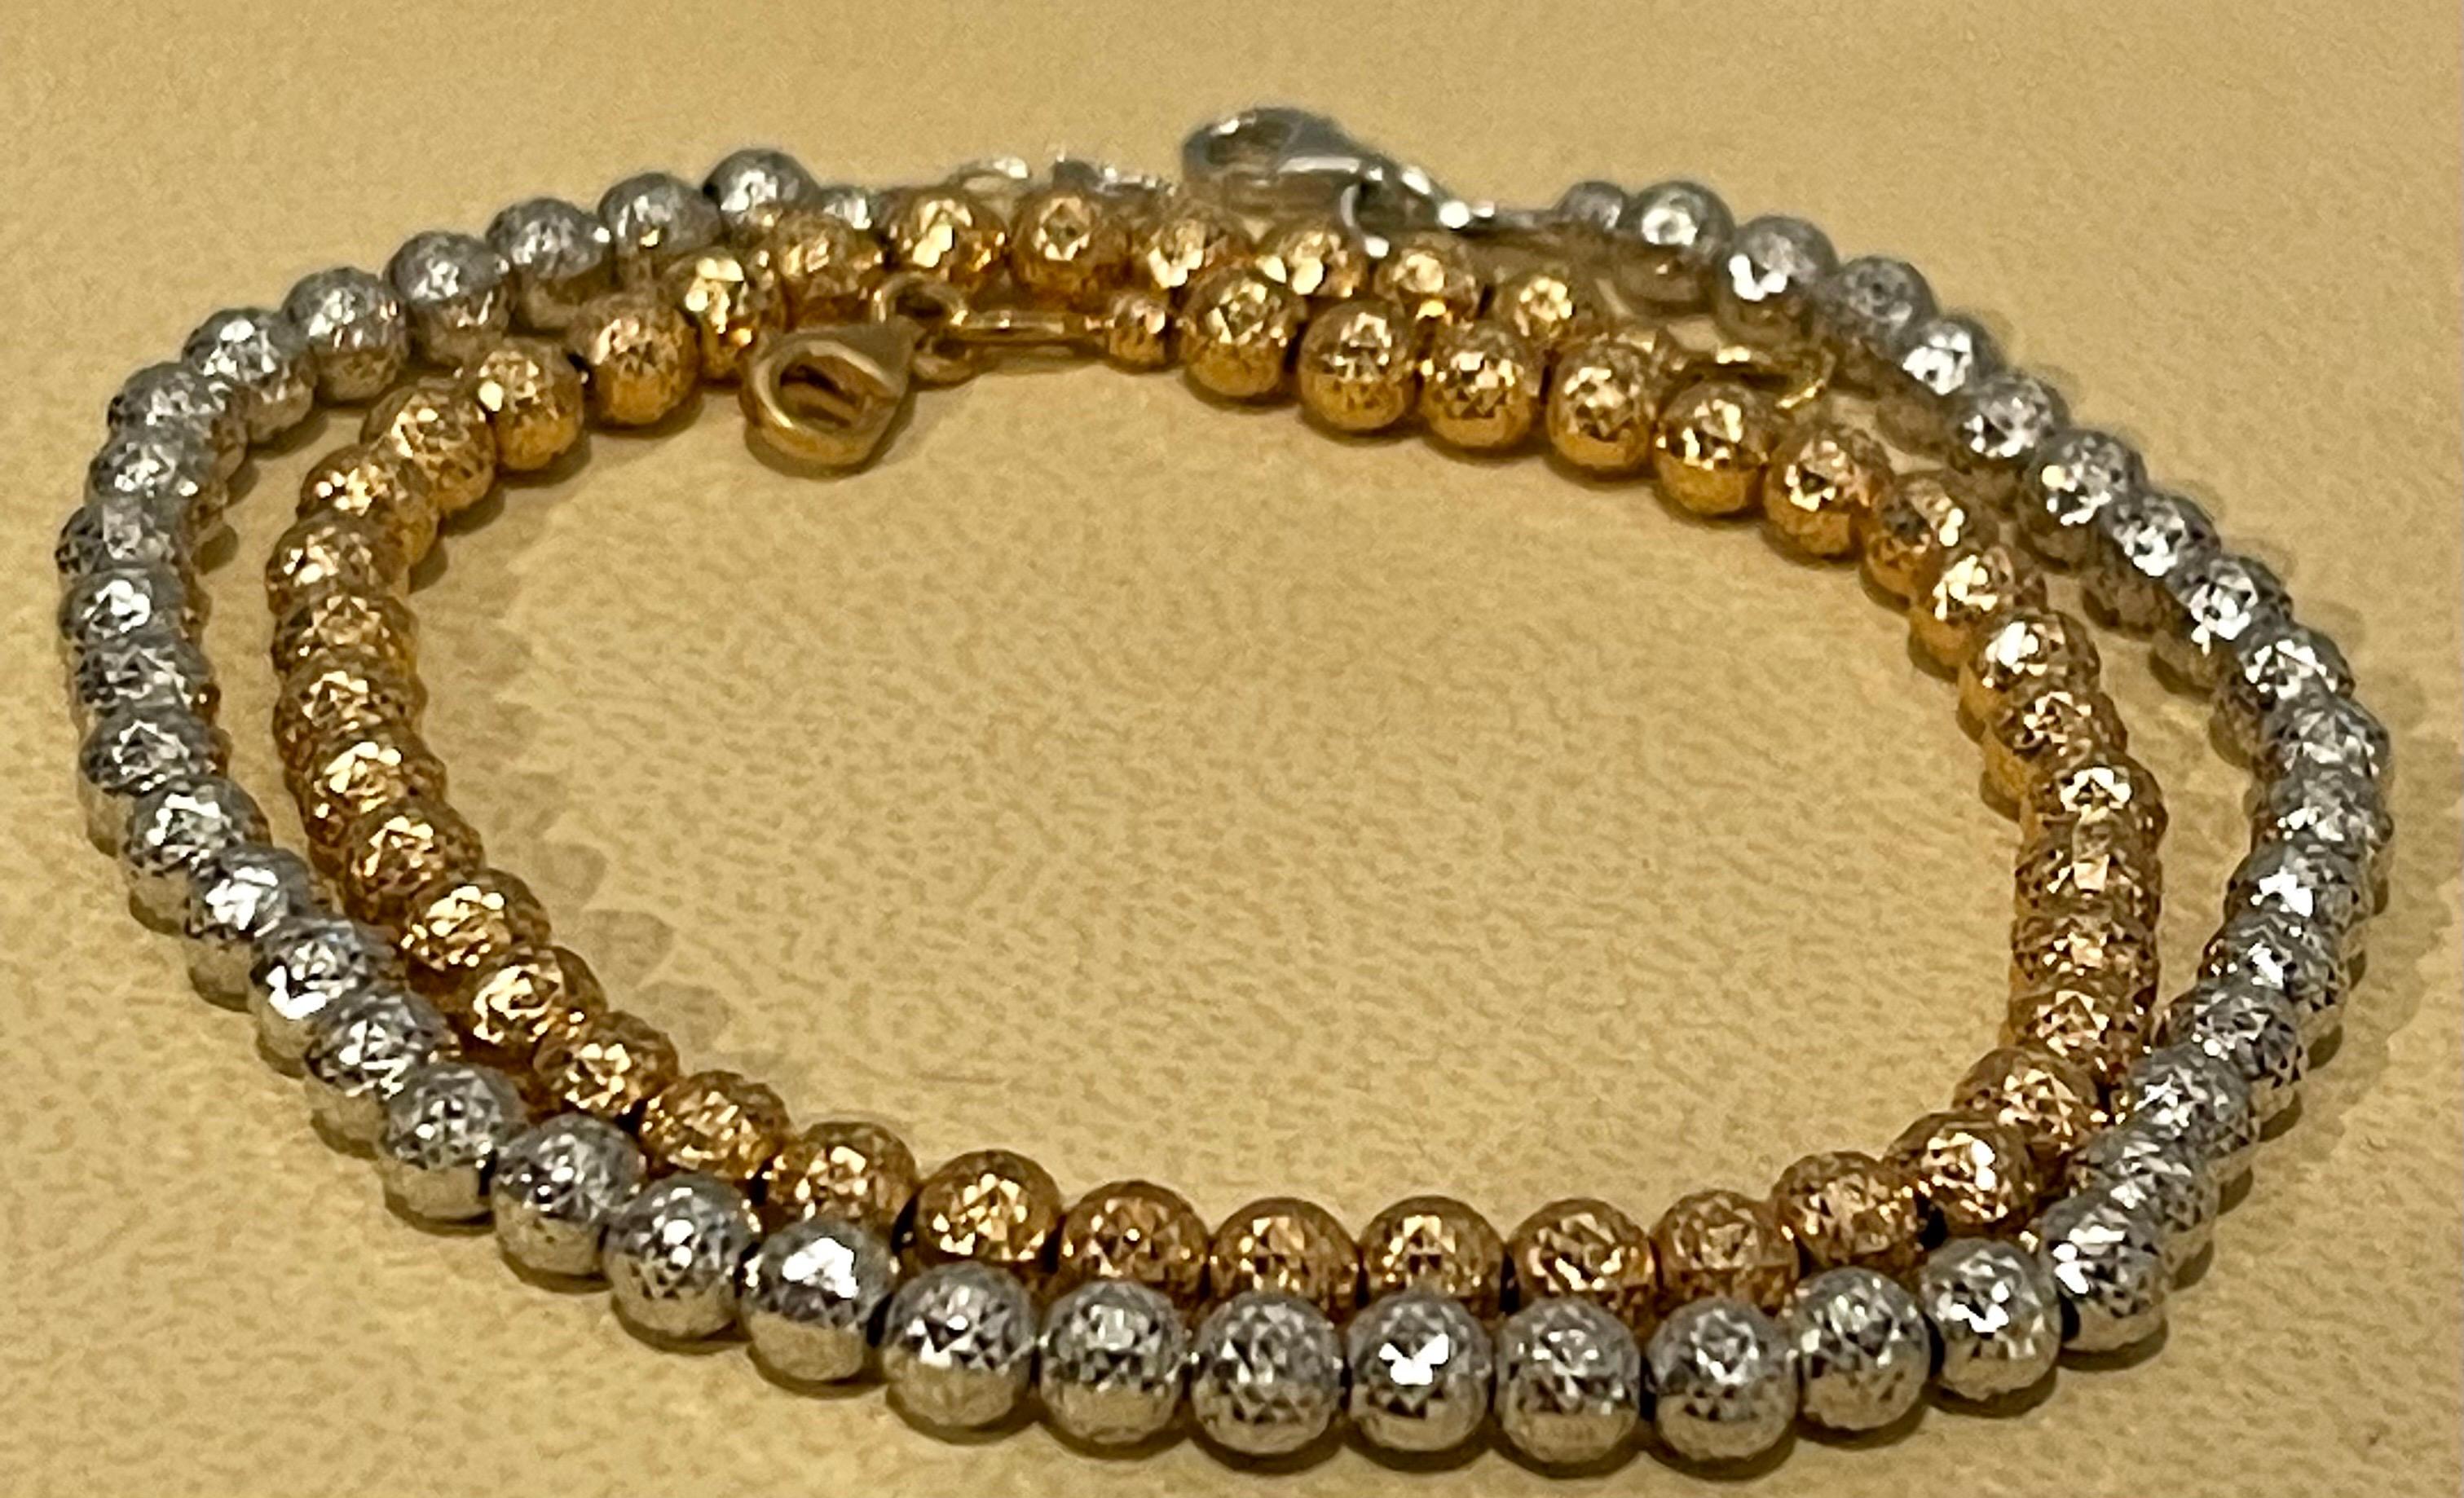 très à la mode, bracelet en perles 
Paire de bracelets à boules en or blanc/or rose 18 carats, 8.2 Gm, Longueur 7.5 pouces
Deux bracelets, un en or blanc et un en or rose
chaque bracelet de 7.0 pouces de long
Magnifique design en forme de boule et